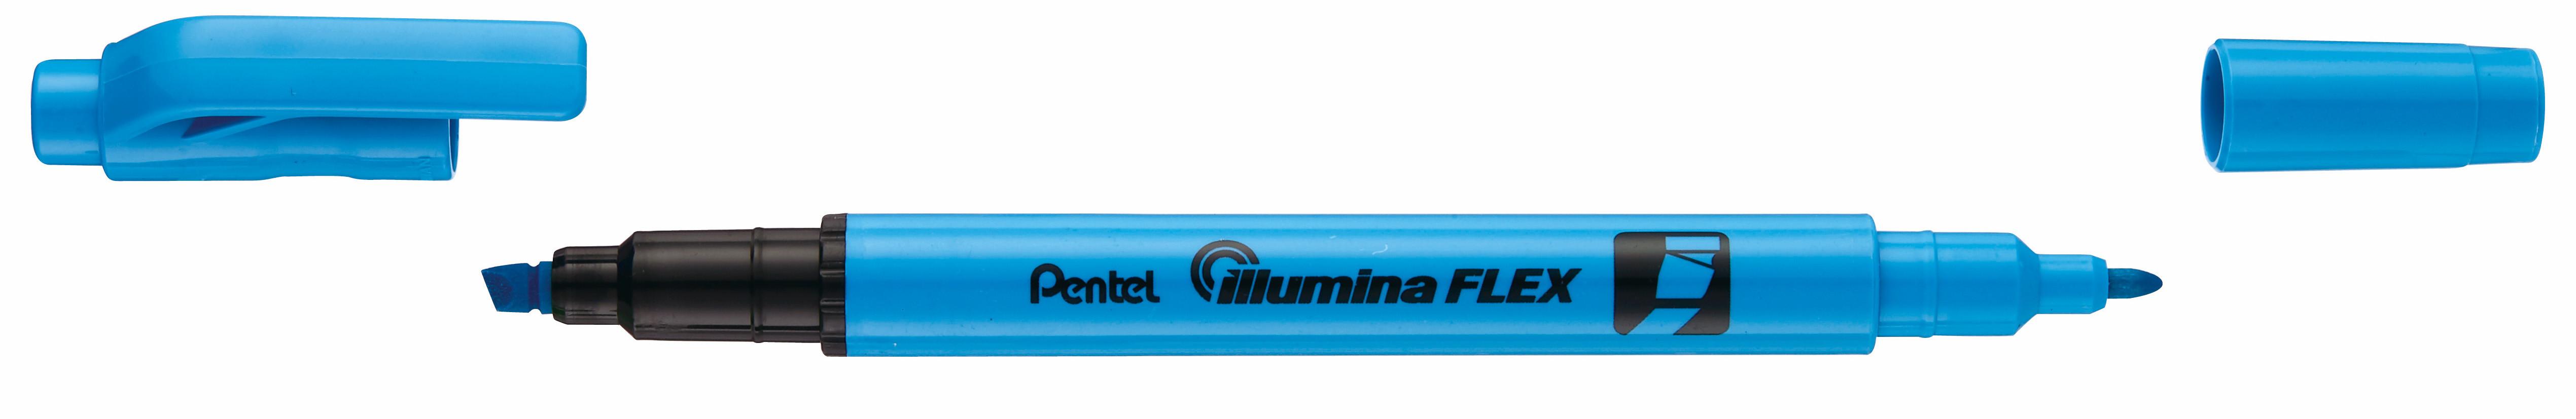 Pentel  Pentel Illumina Flex evidenziatore 1 pz Punta sottile/smussata Azzurro 